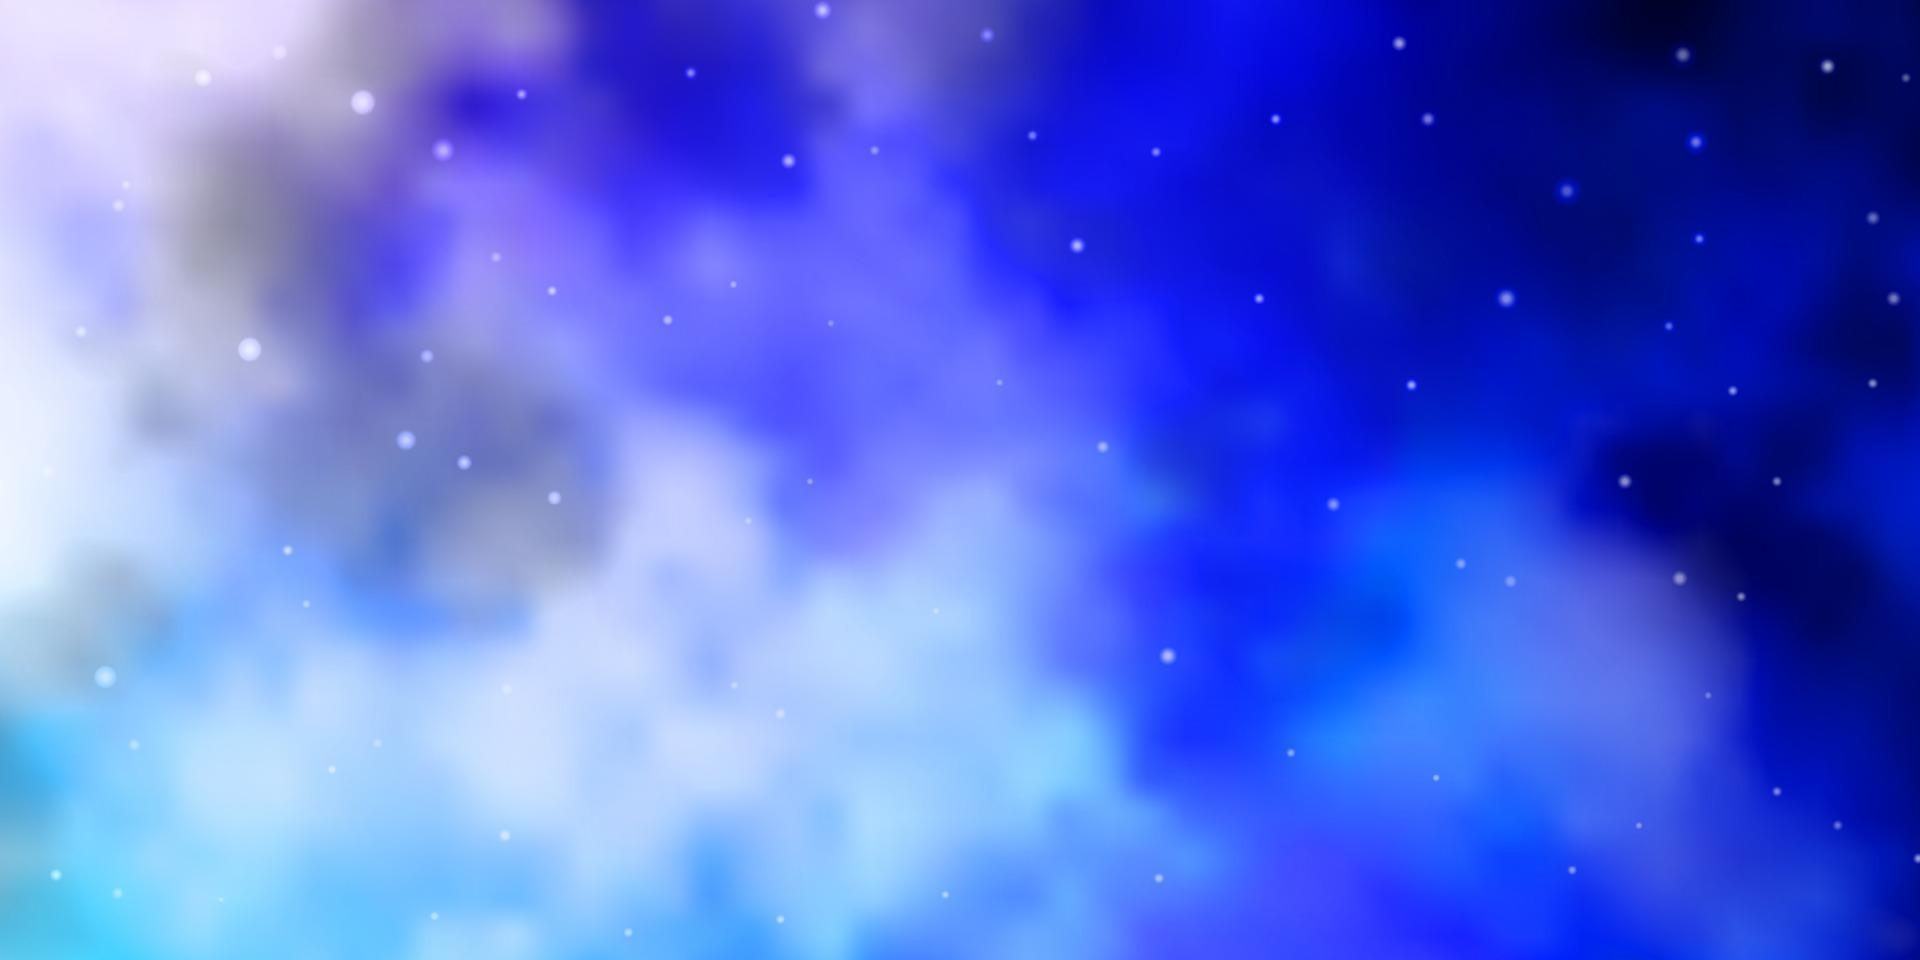 ljusrosa, blå vektorstruktur med vackra stjärnor. vektor